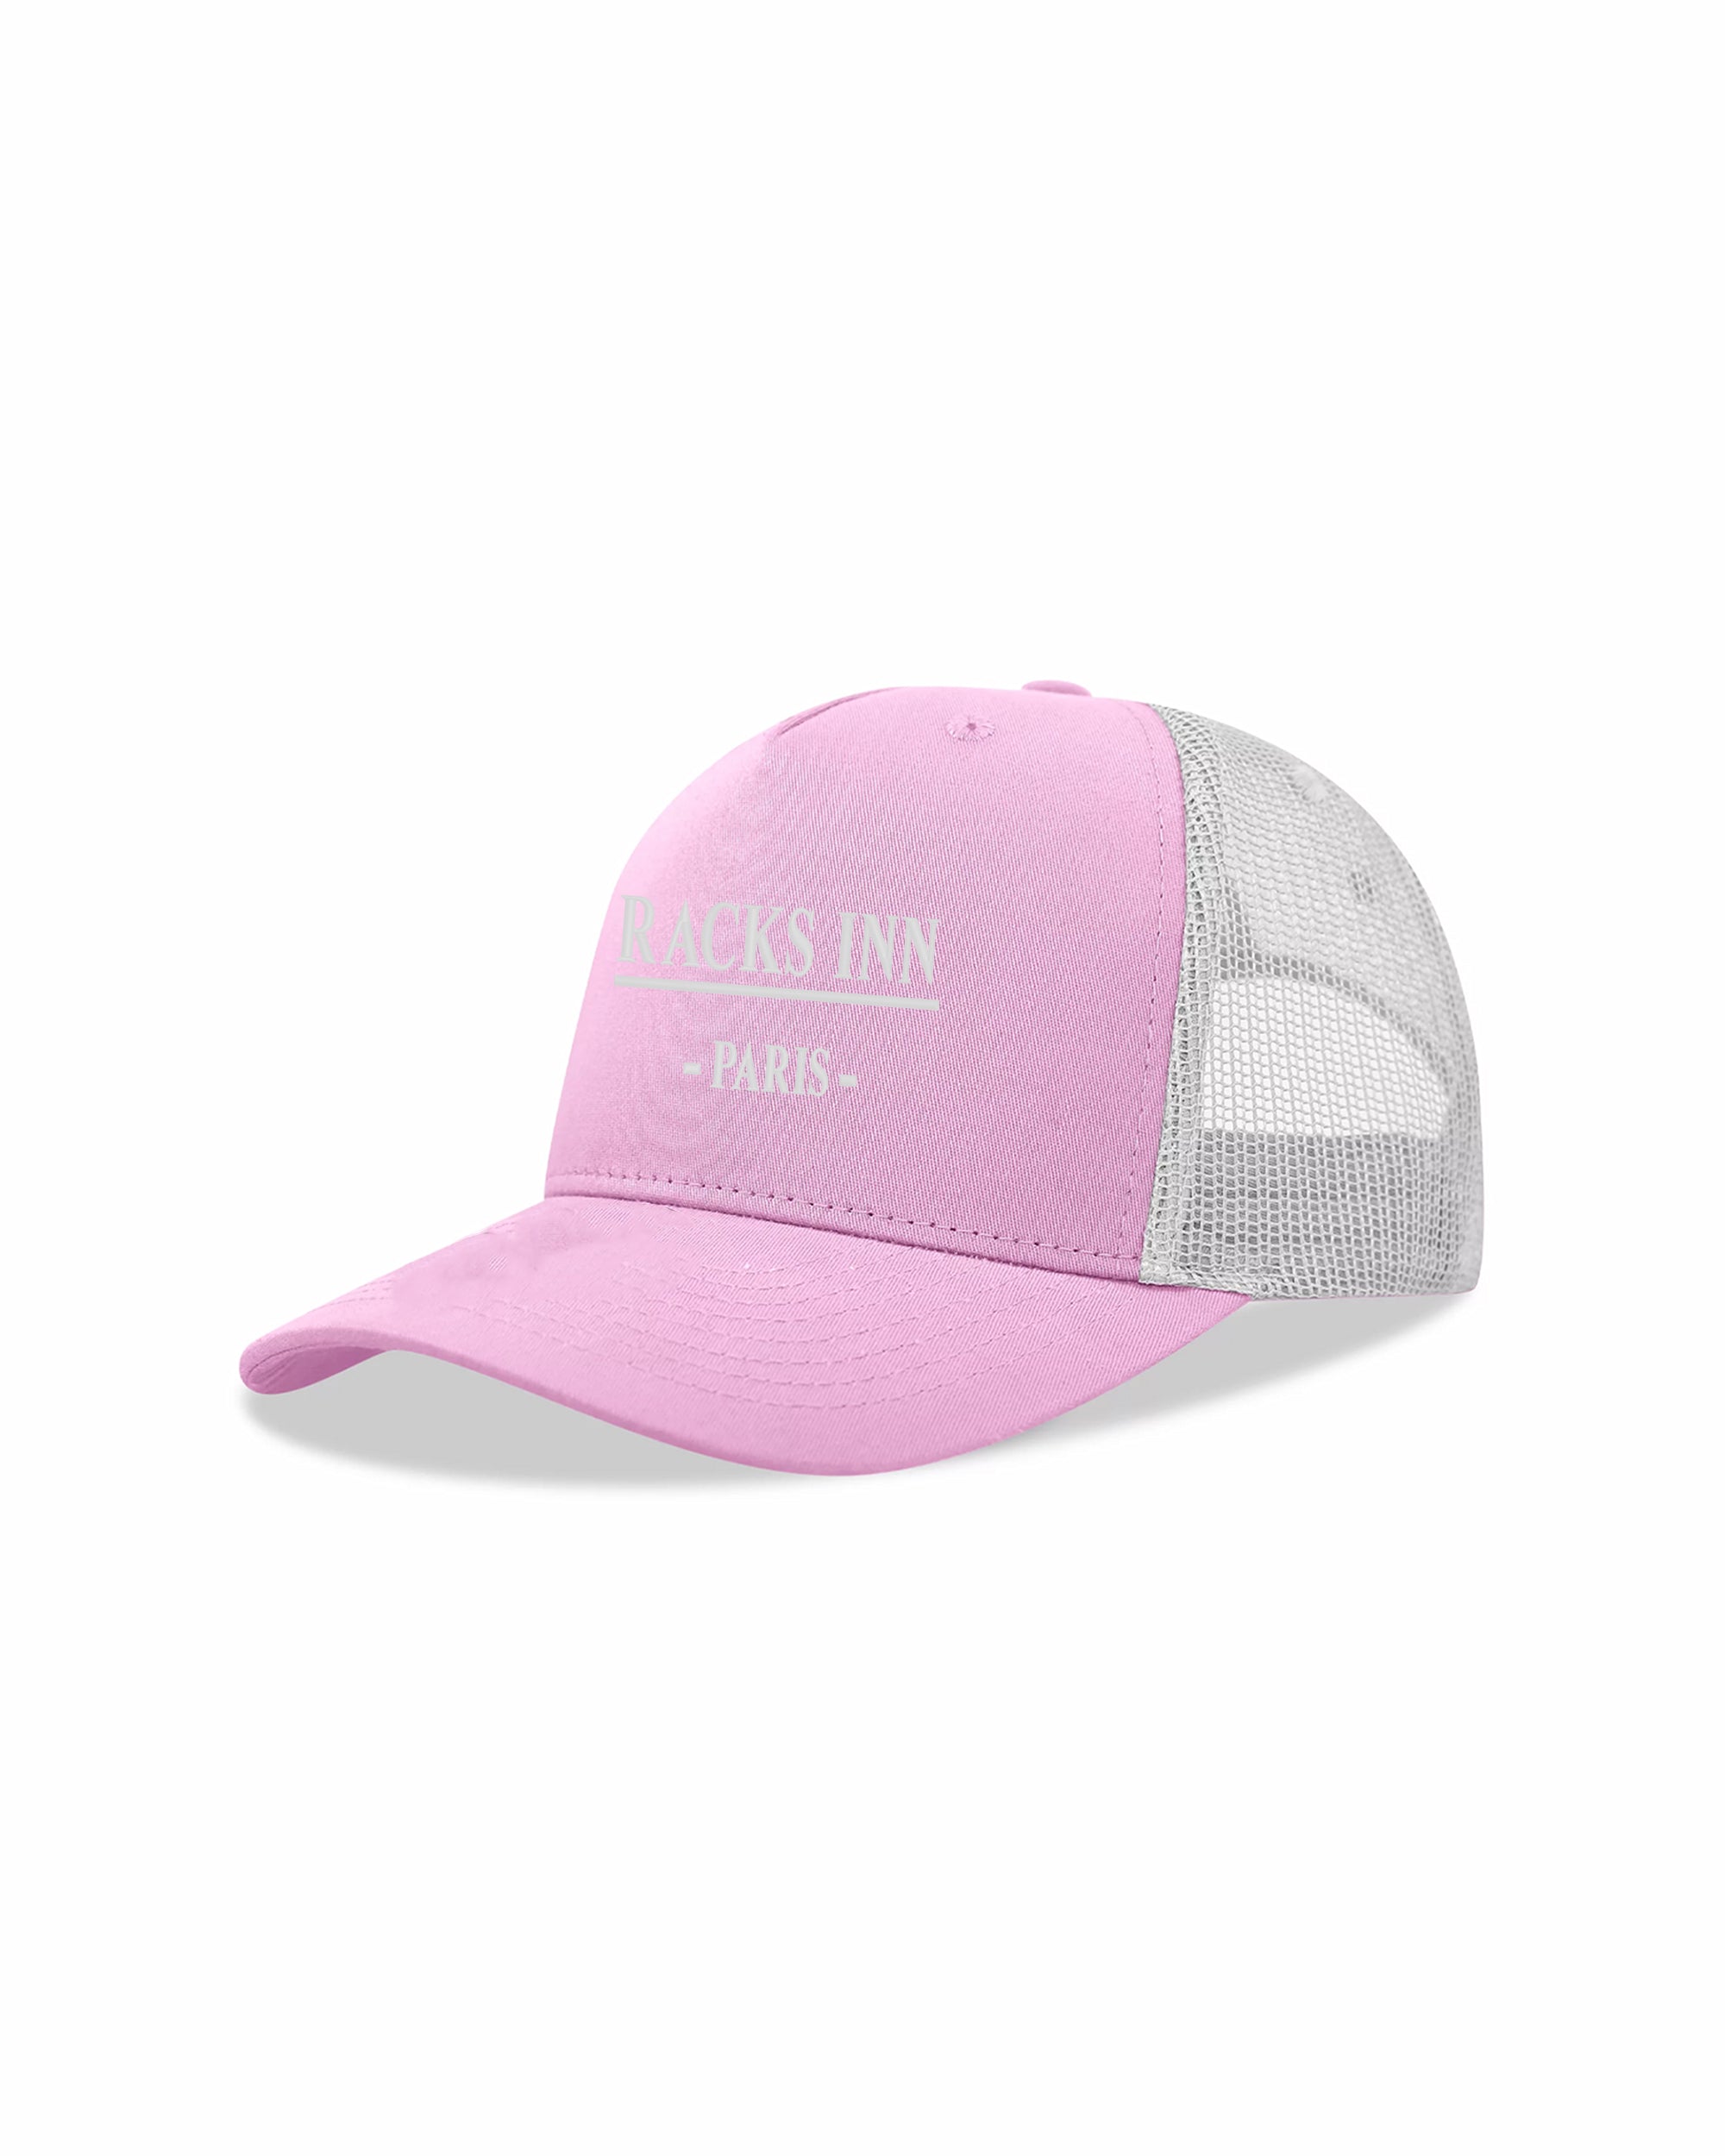 Paris Trucker Hat - Pink